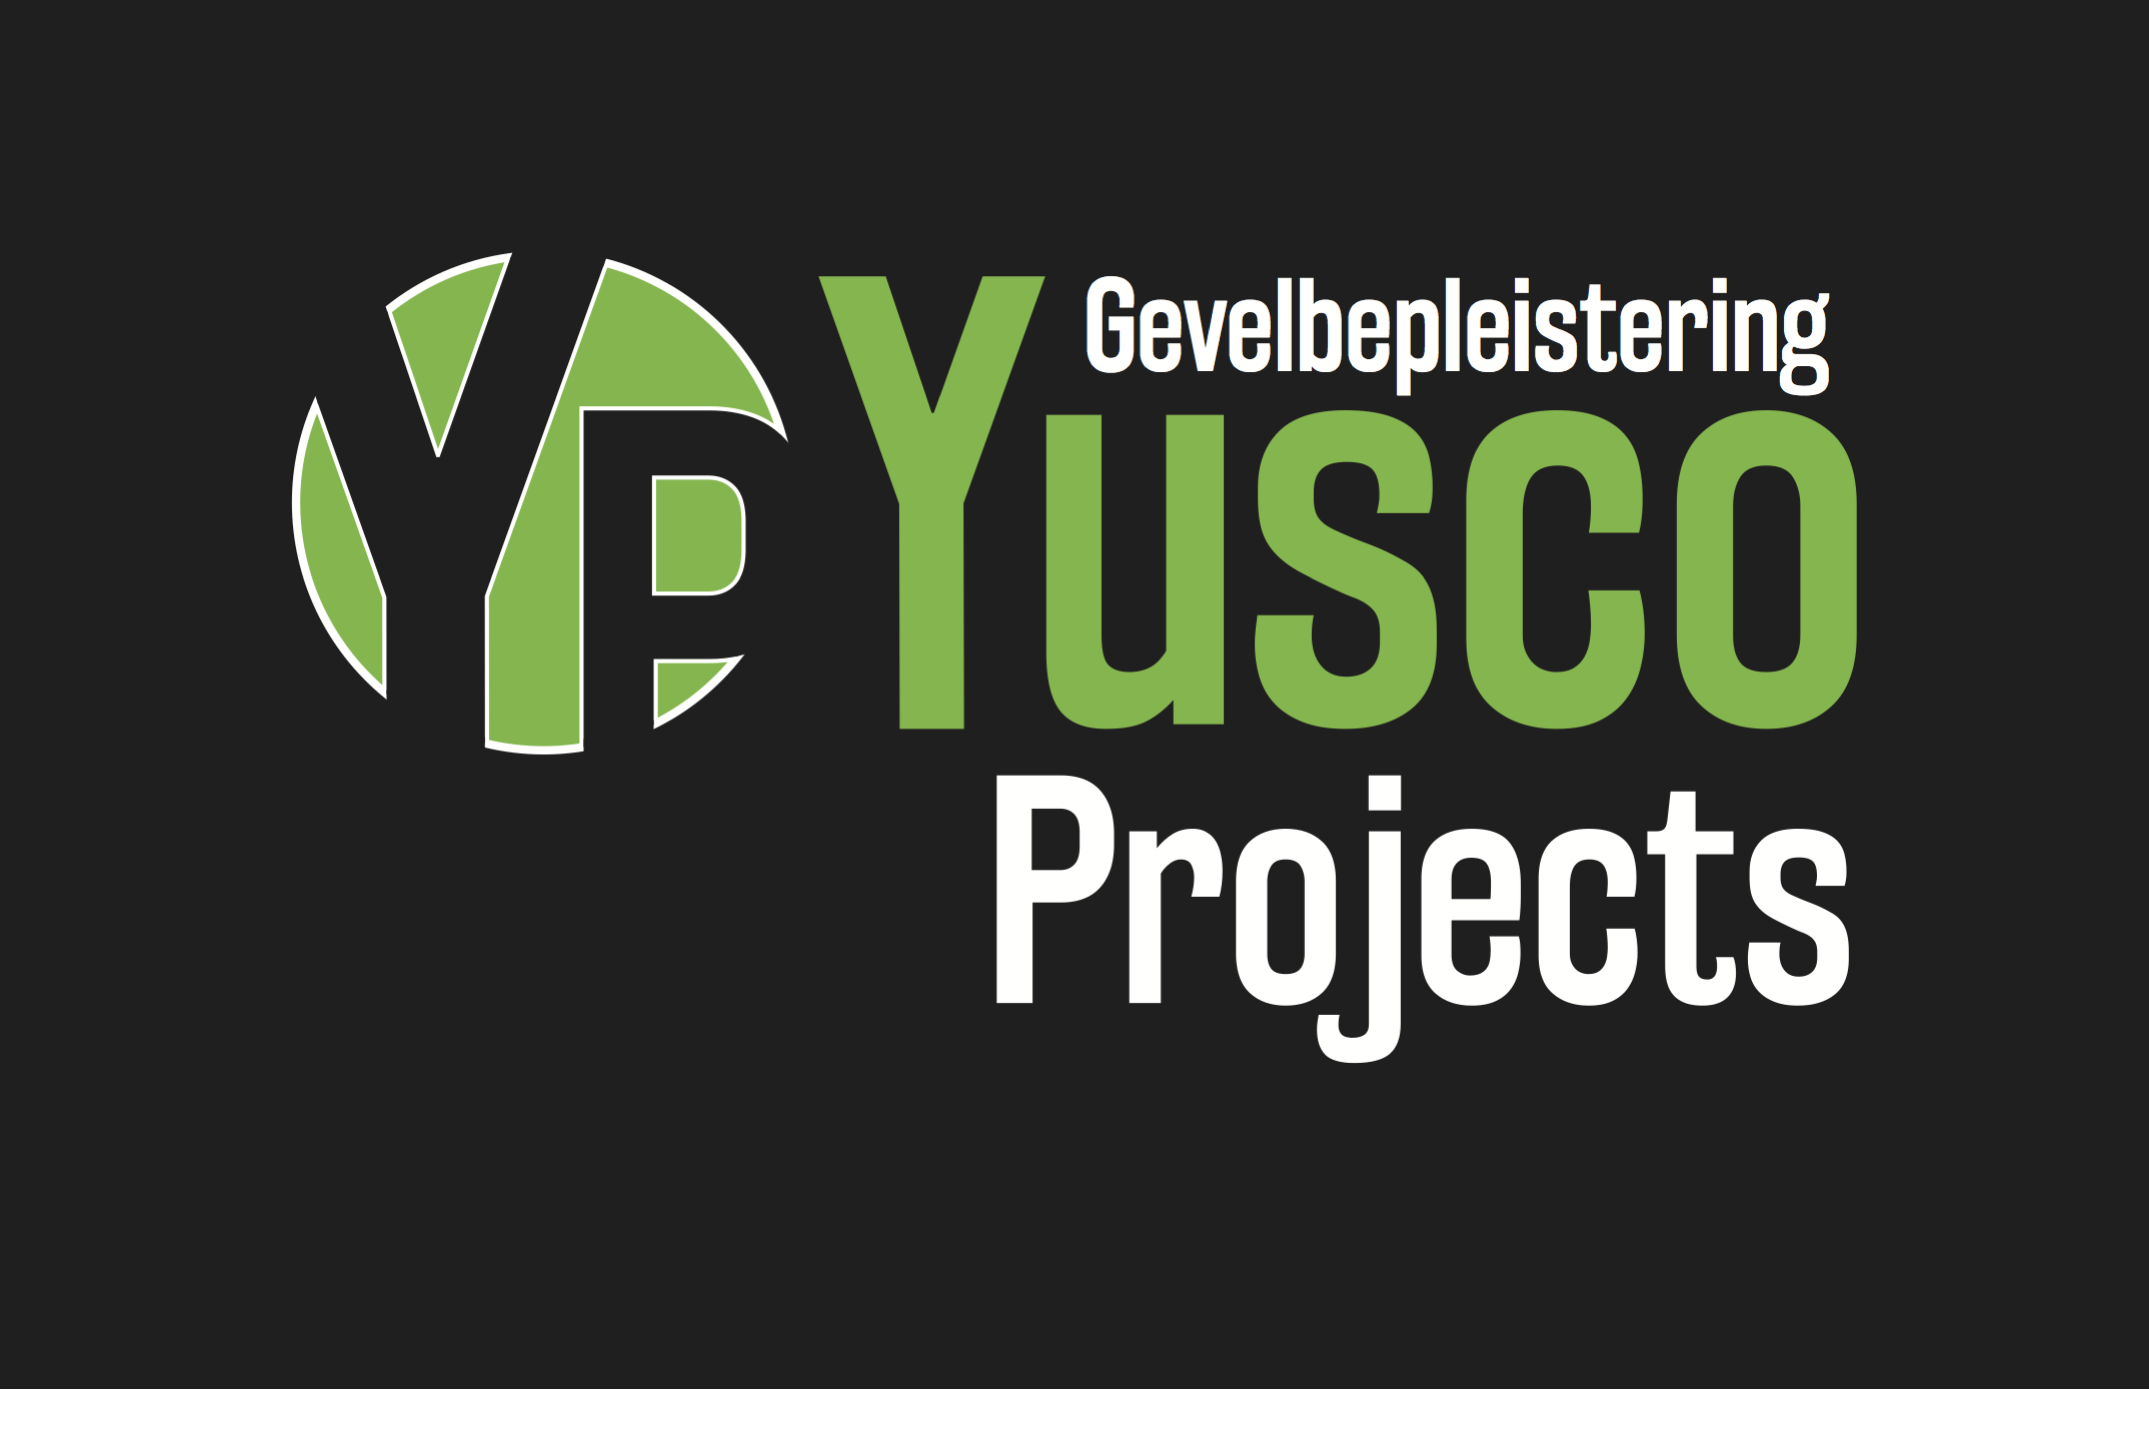 stukadoors Gentbrugge Yusco Projects Gevelbepleistering